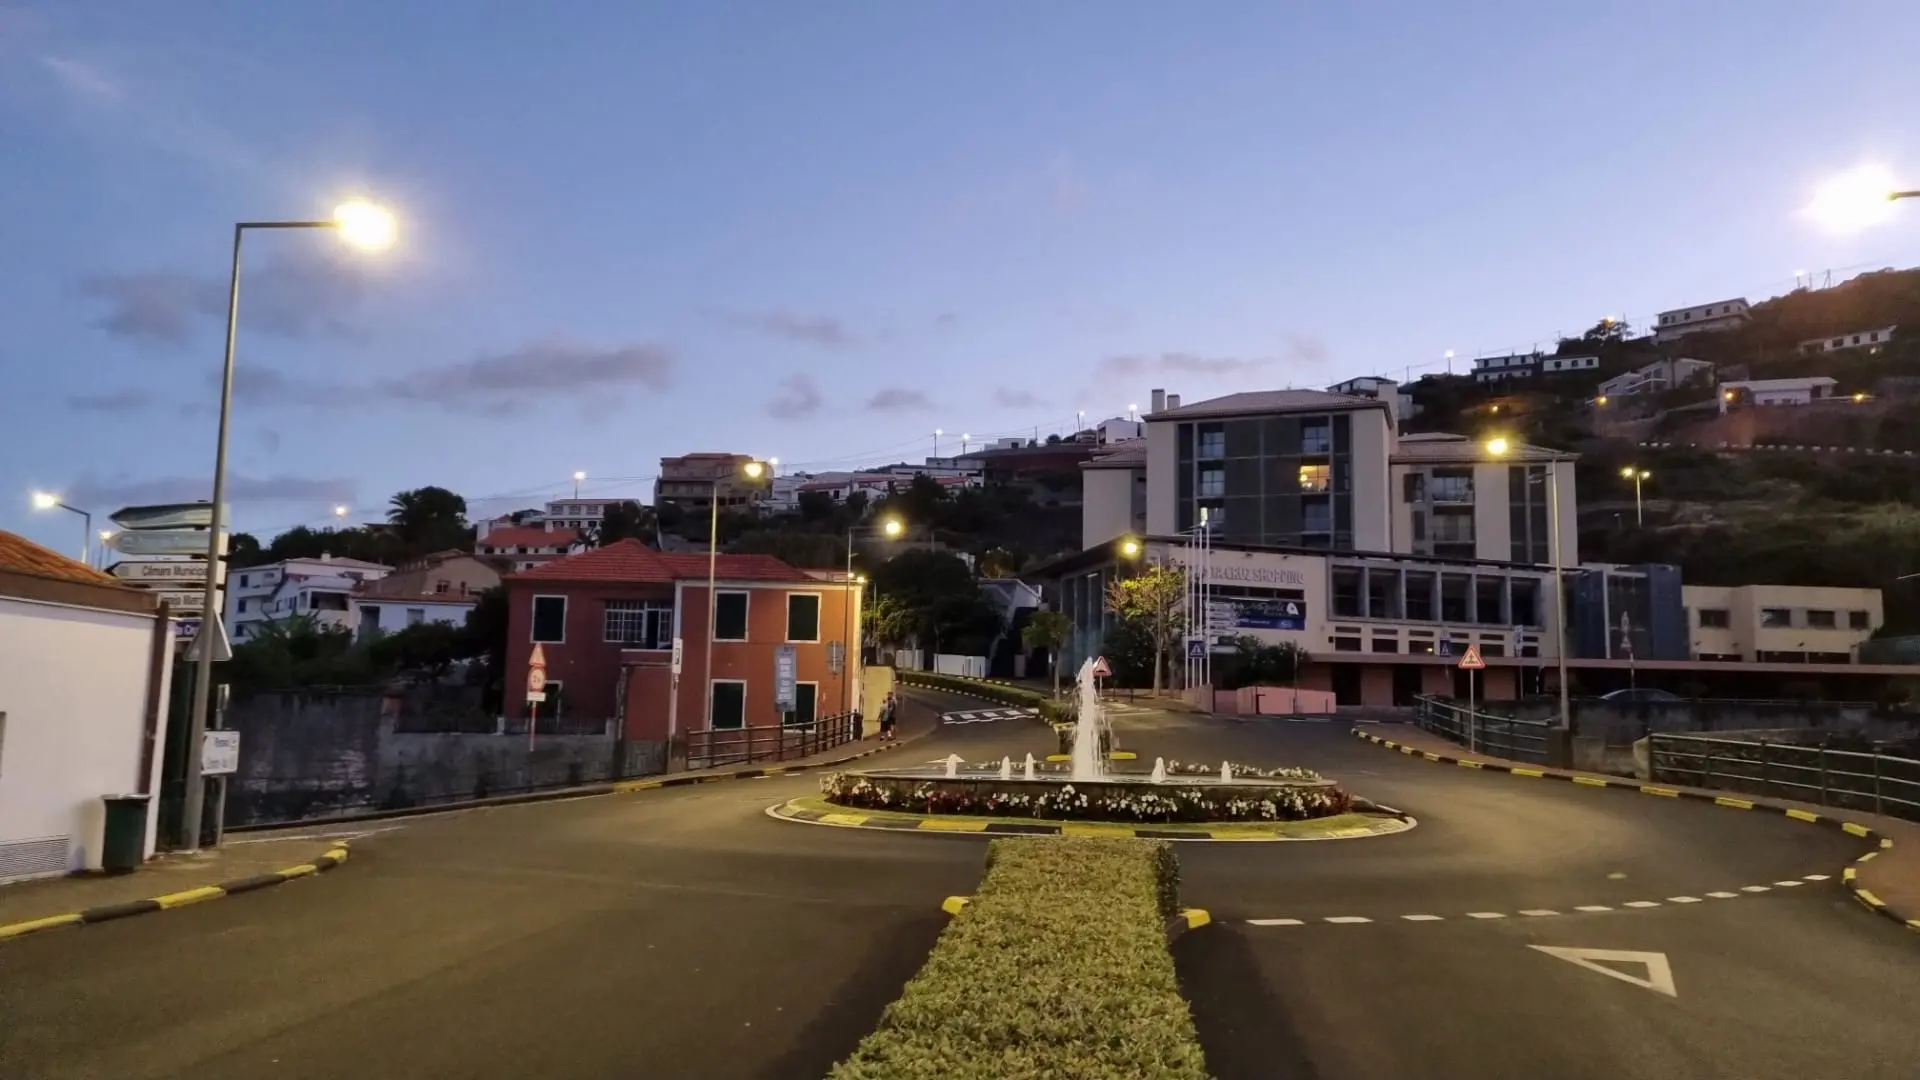 Avenida 25 de Junho, Santa Cruz – Madeira